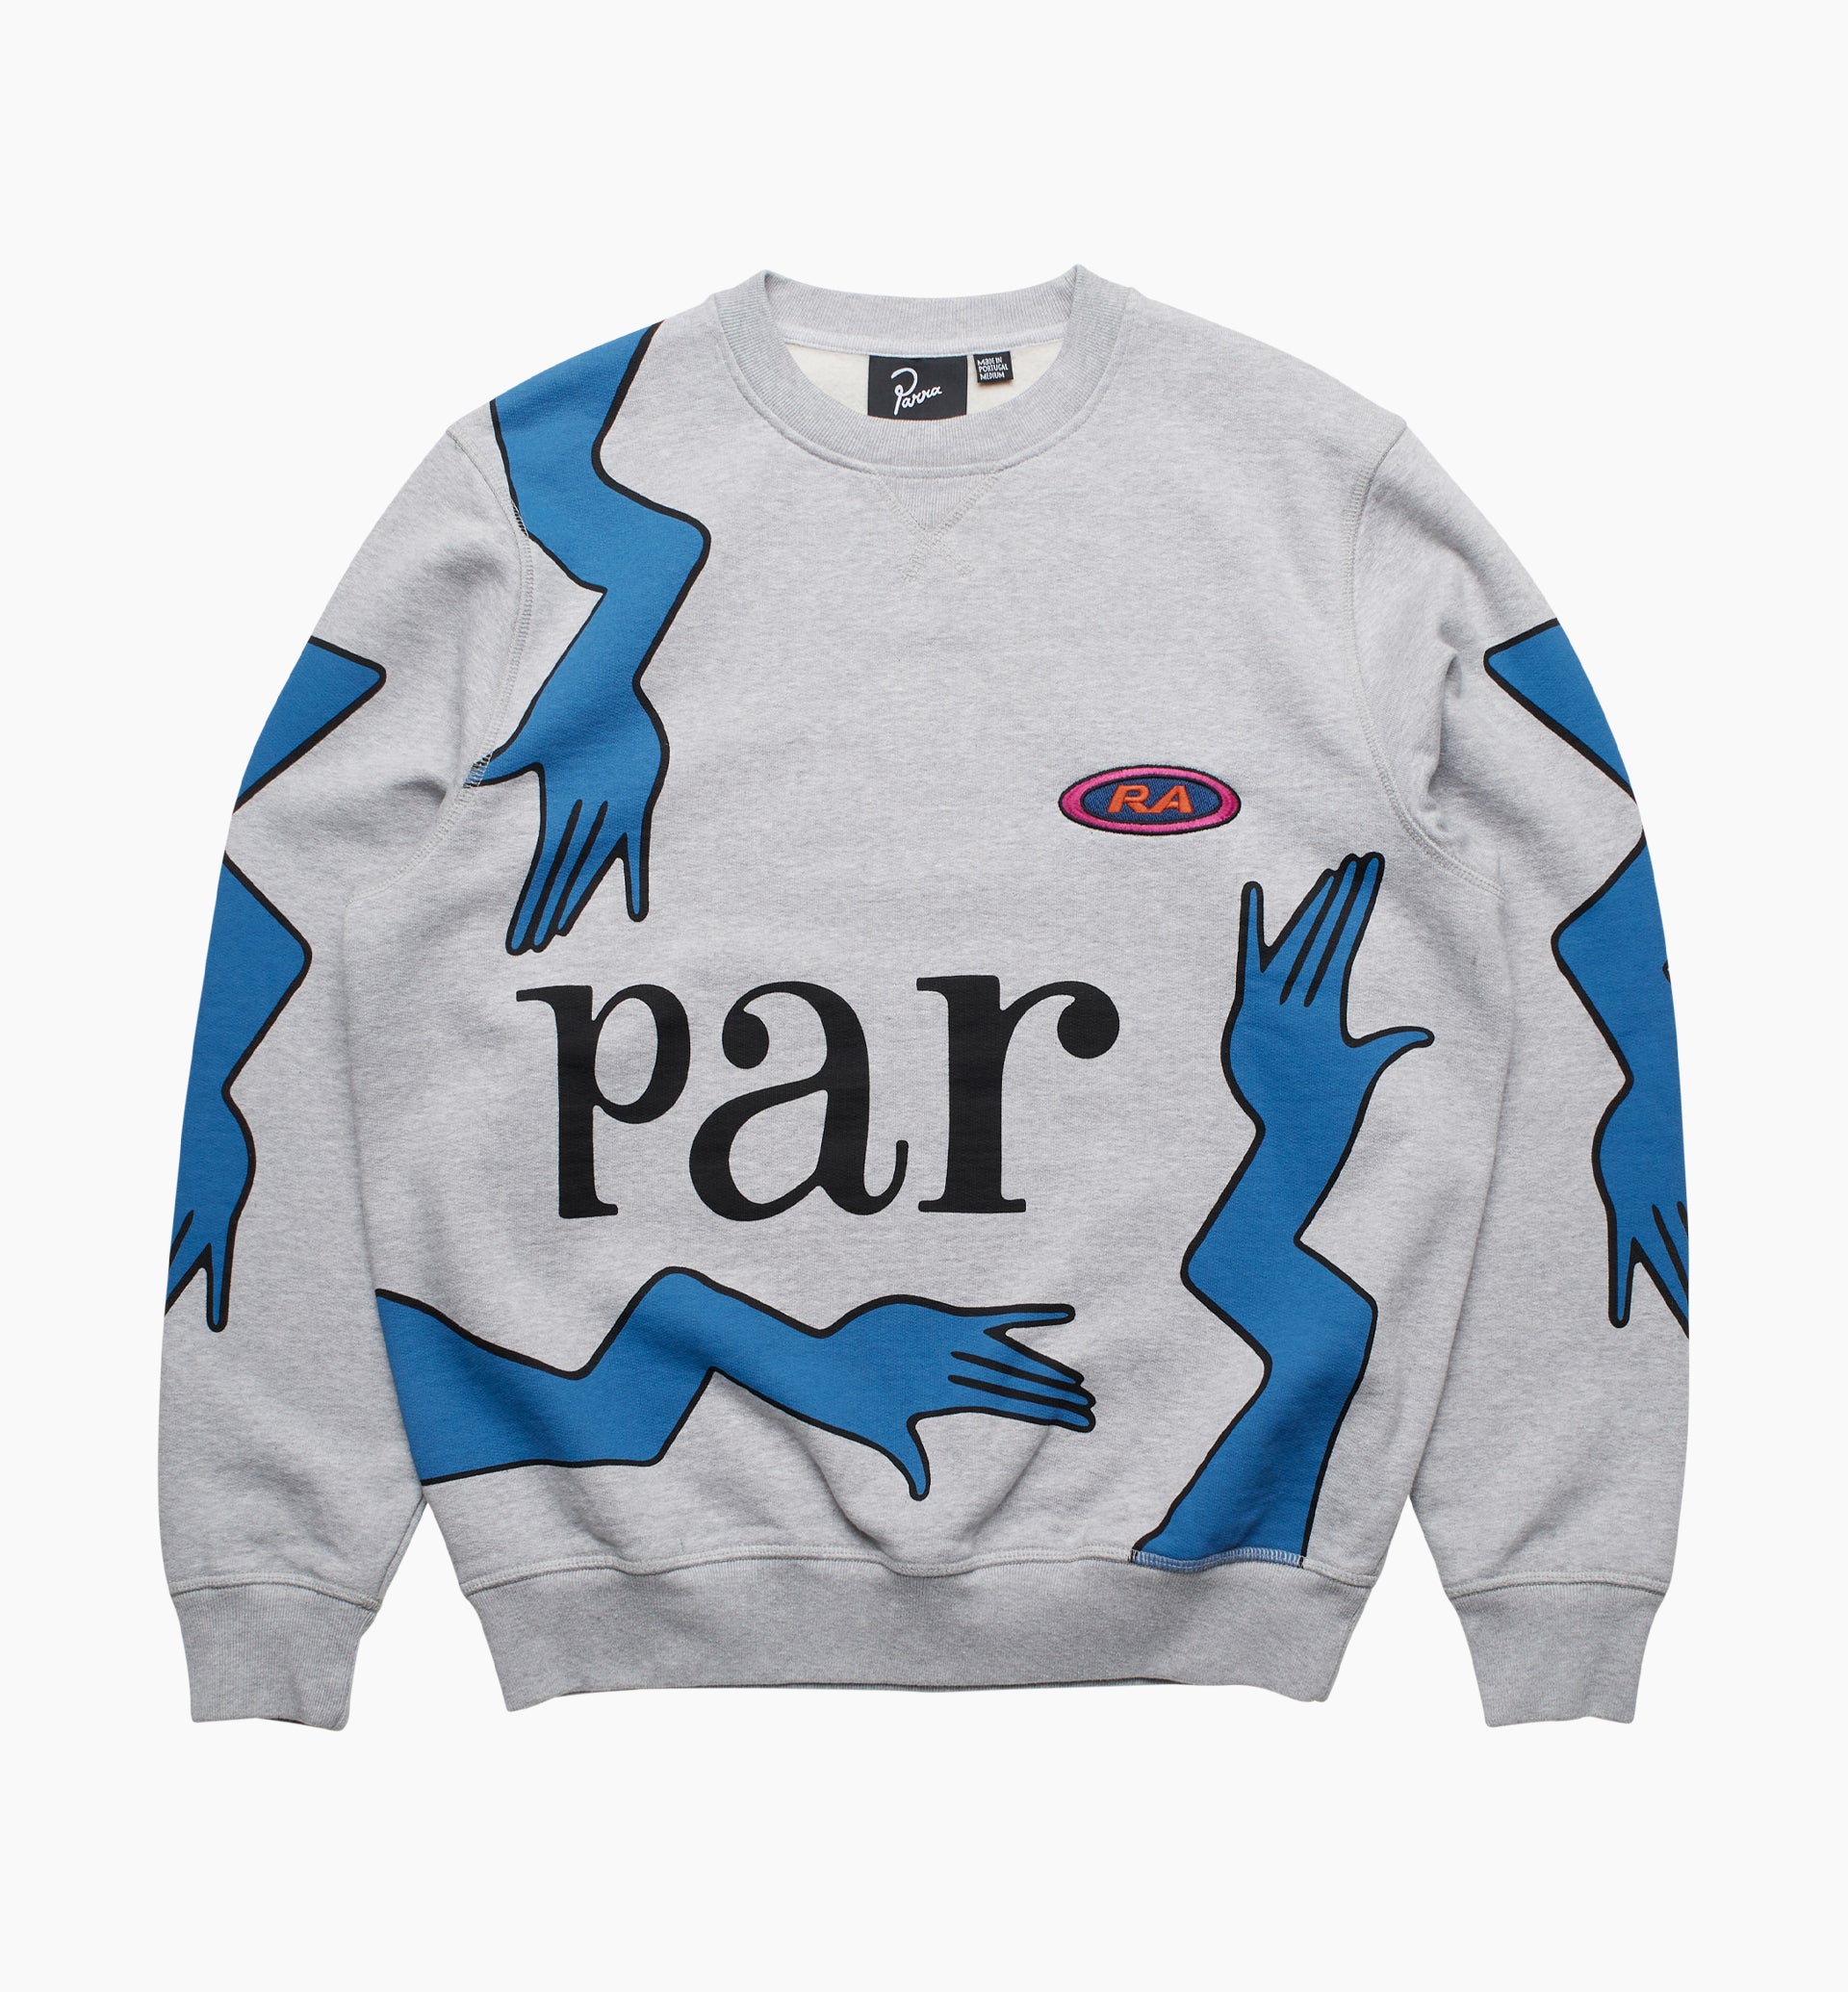 Parra - early grab crew neck sweatshirt